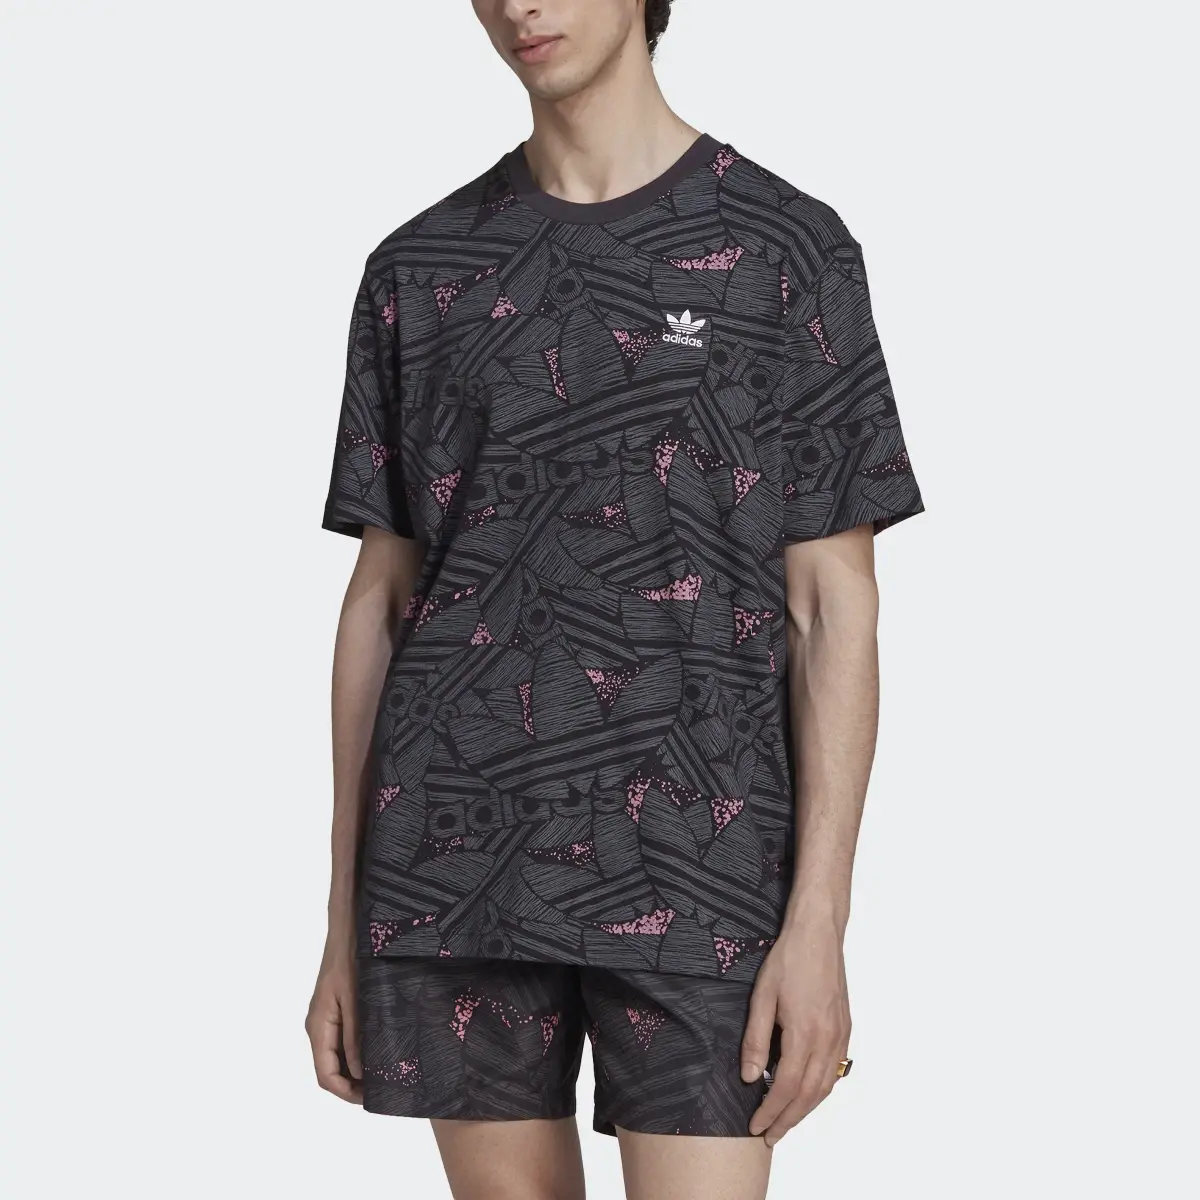 Adidas Rekive Trefoil Allover Print T-Shirt. 1